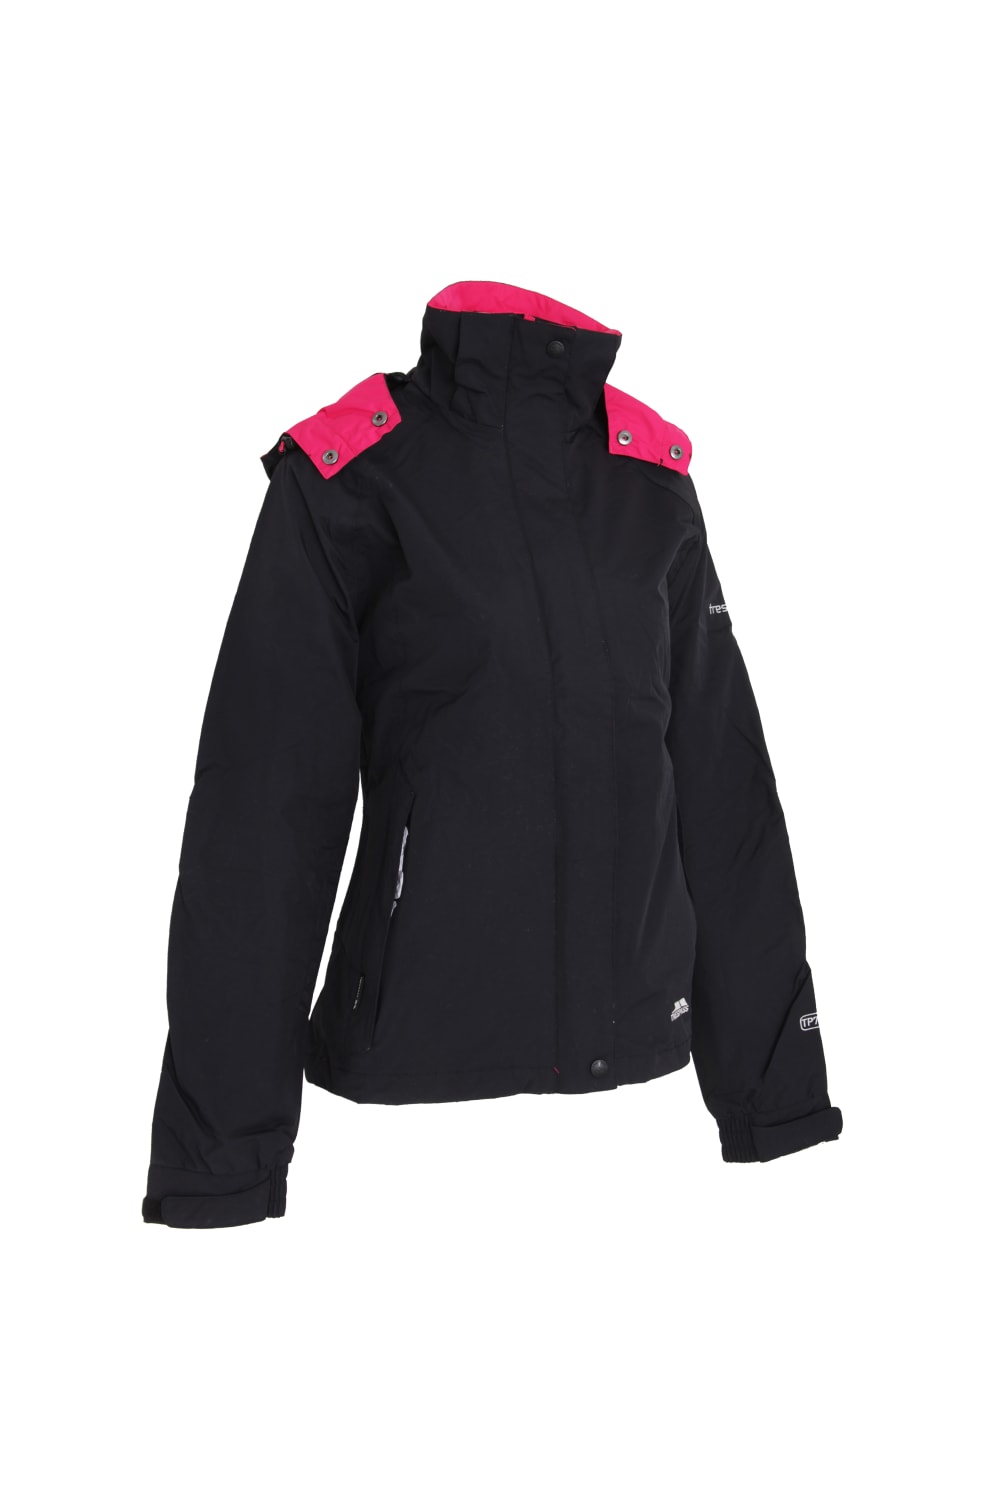 Womens/Ladies Florissant Hooded Waterproof Jacket - Black